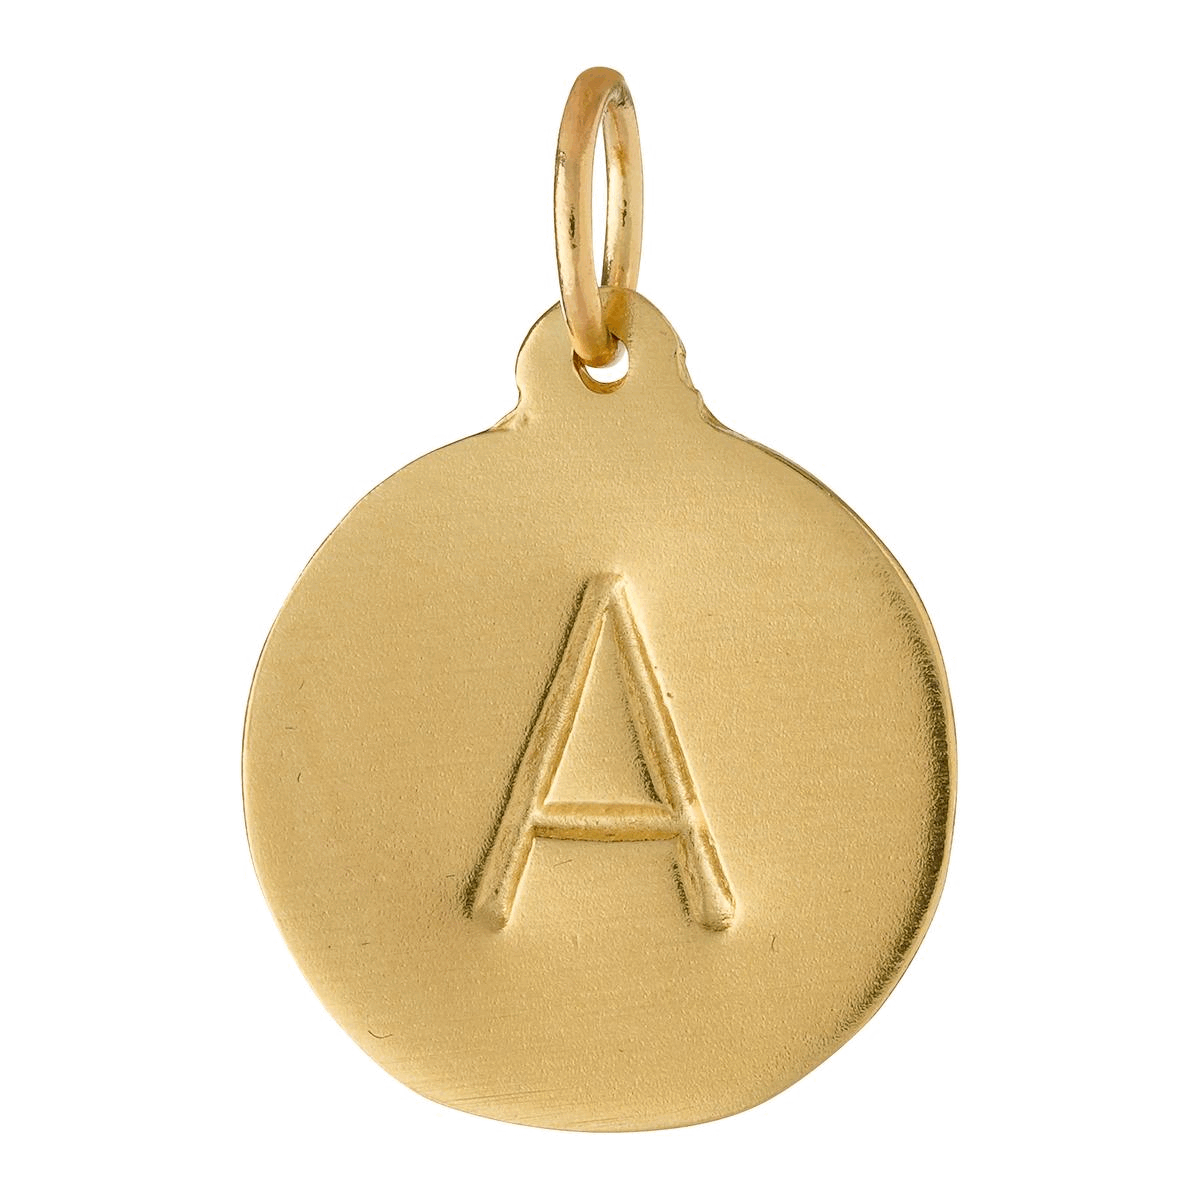  KALIONE 104 Pieces A-Z Alphabet Letter Charms, Gold